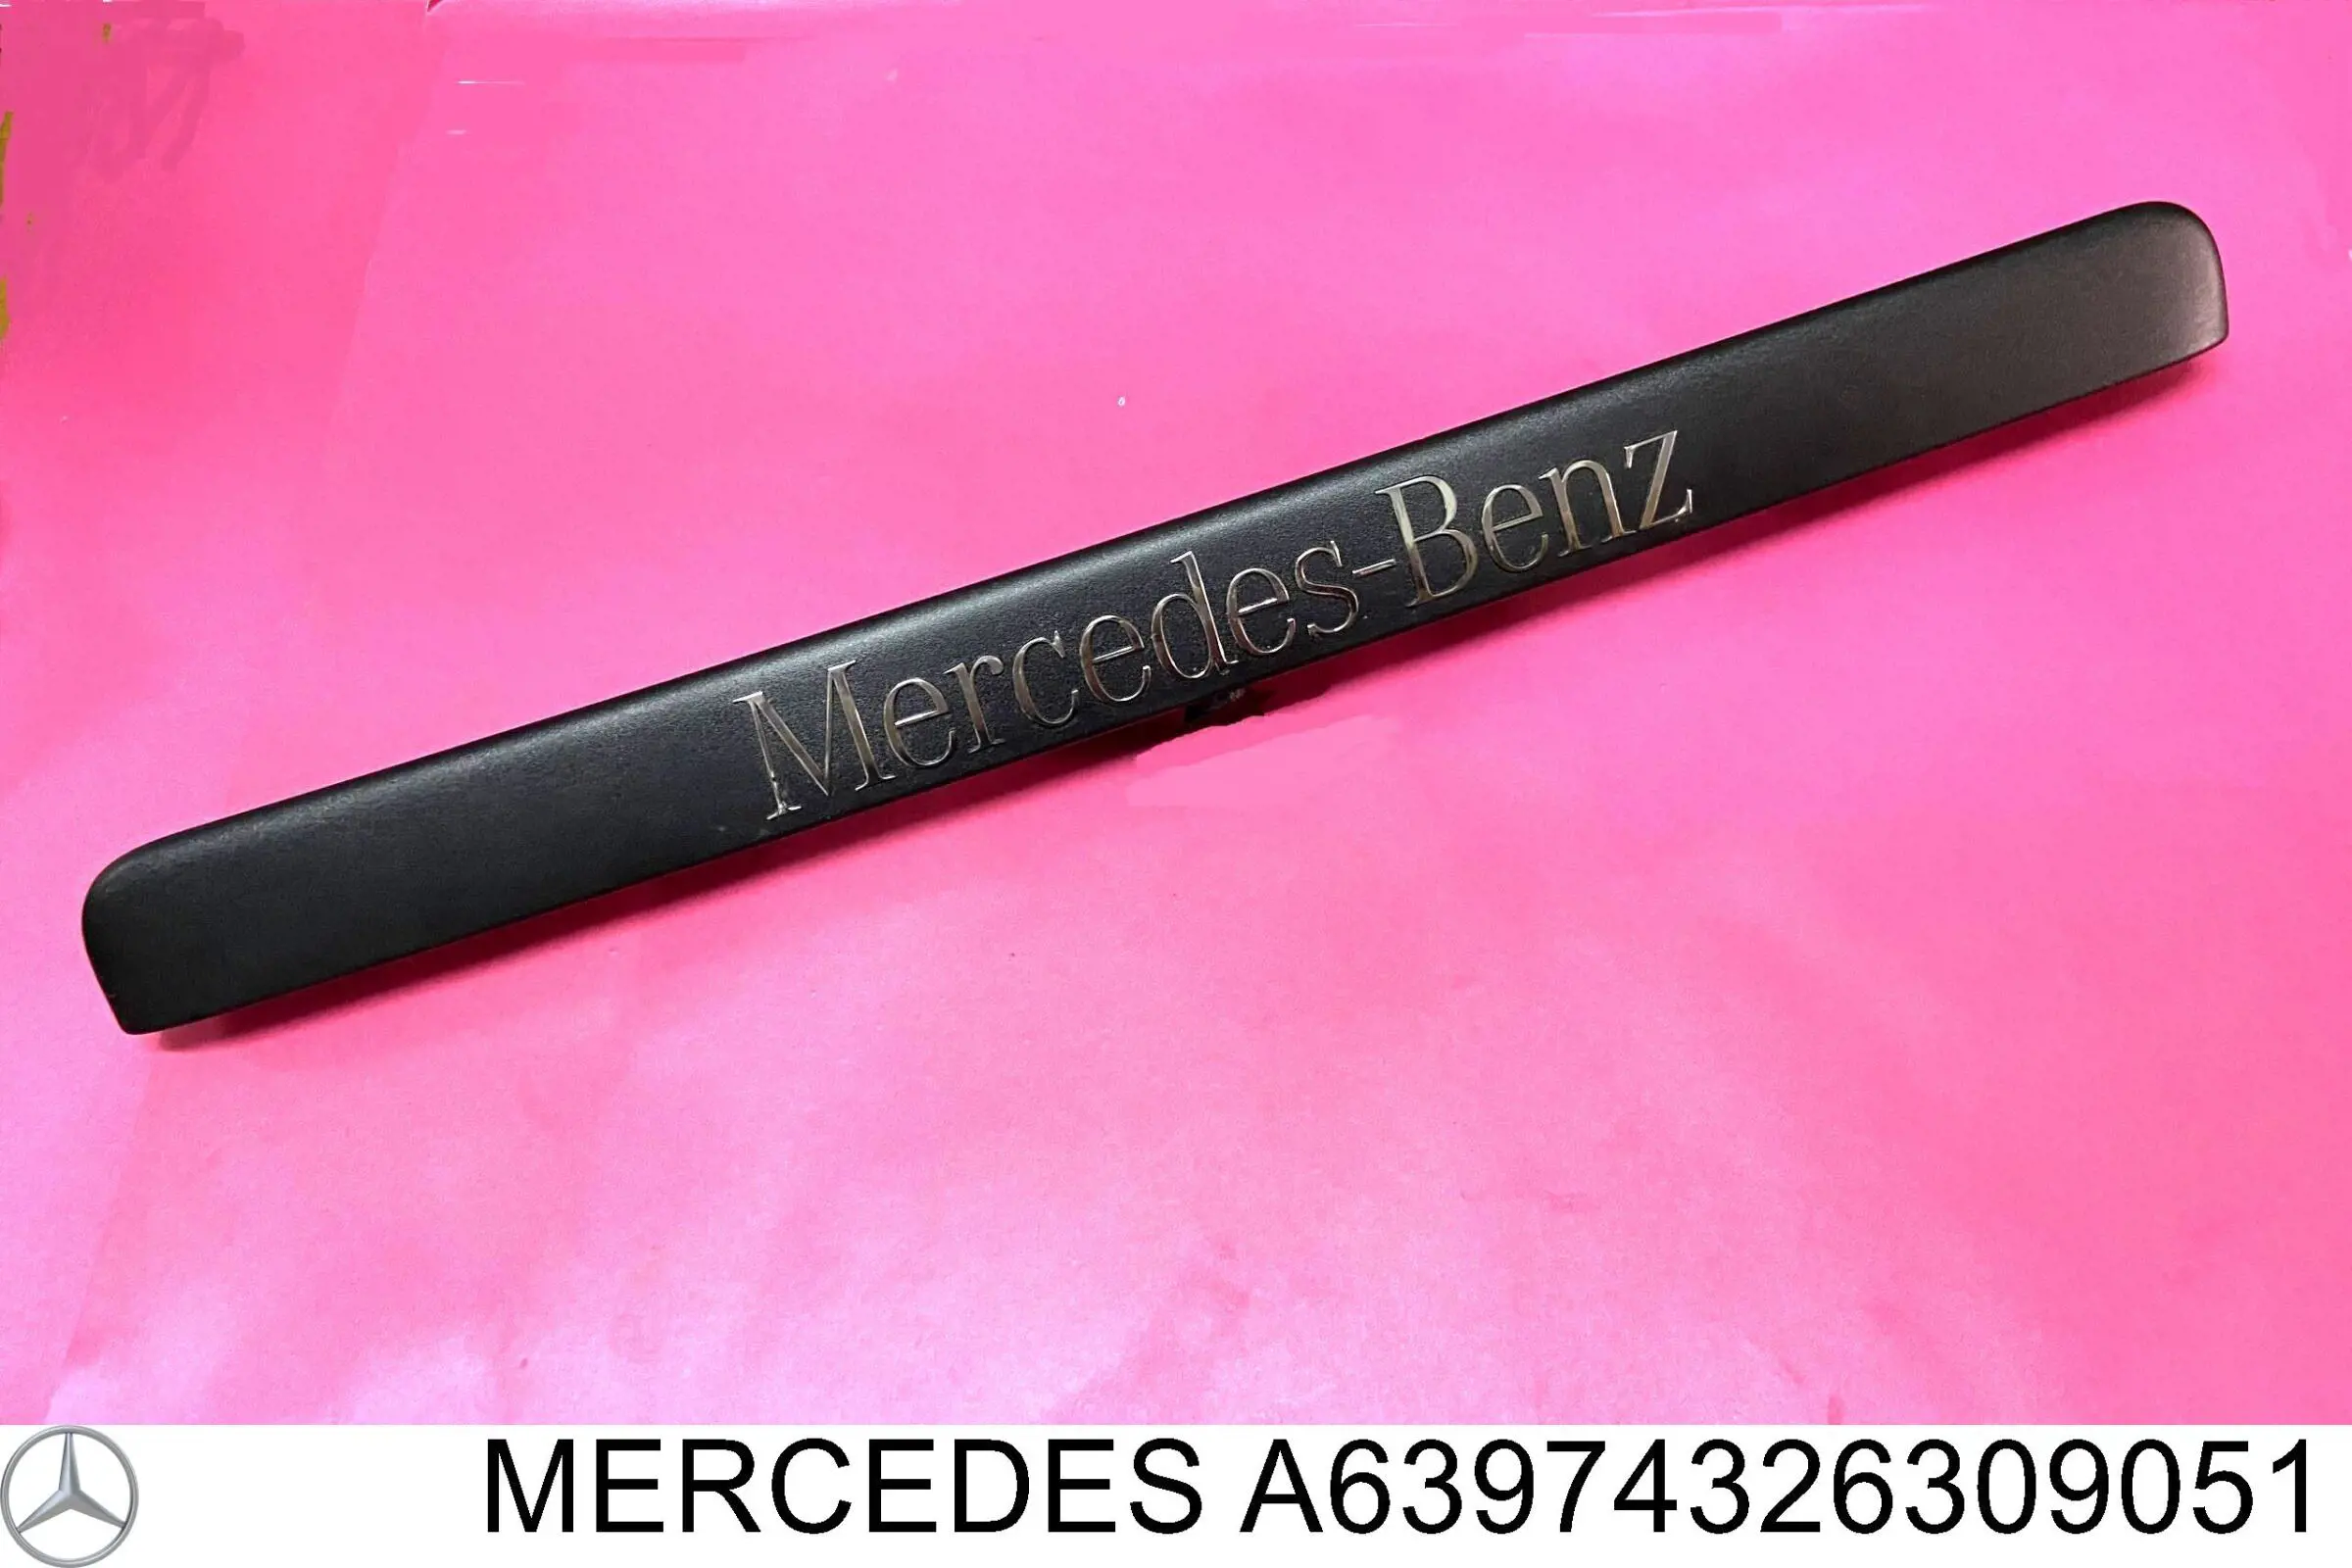 6397432630 Mercedes эмблема крышки багажника (фирменный значок)